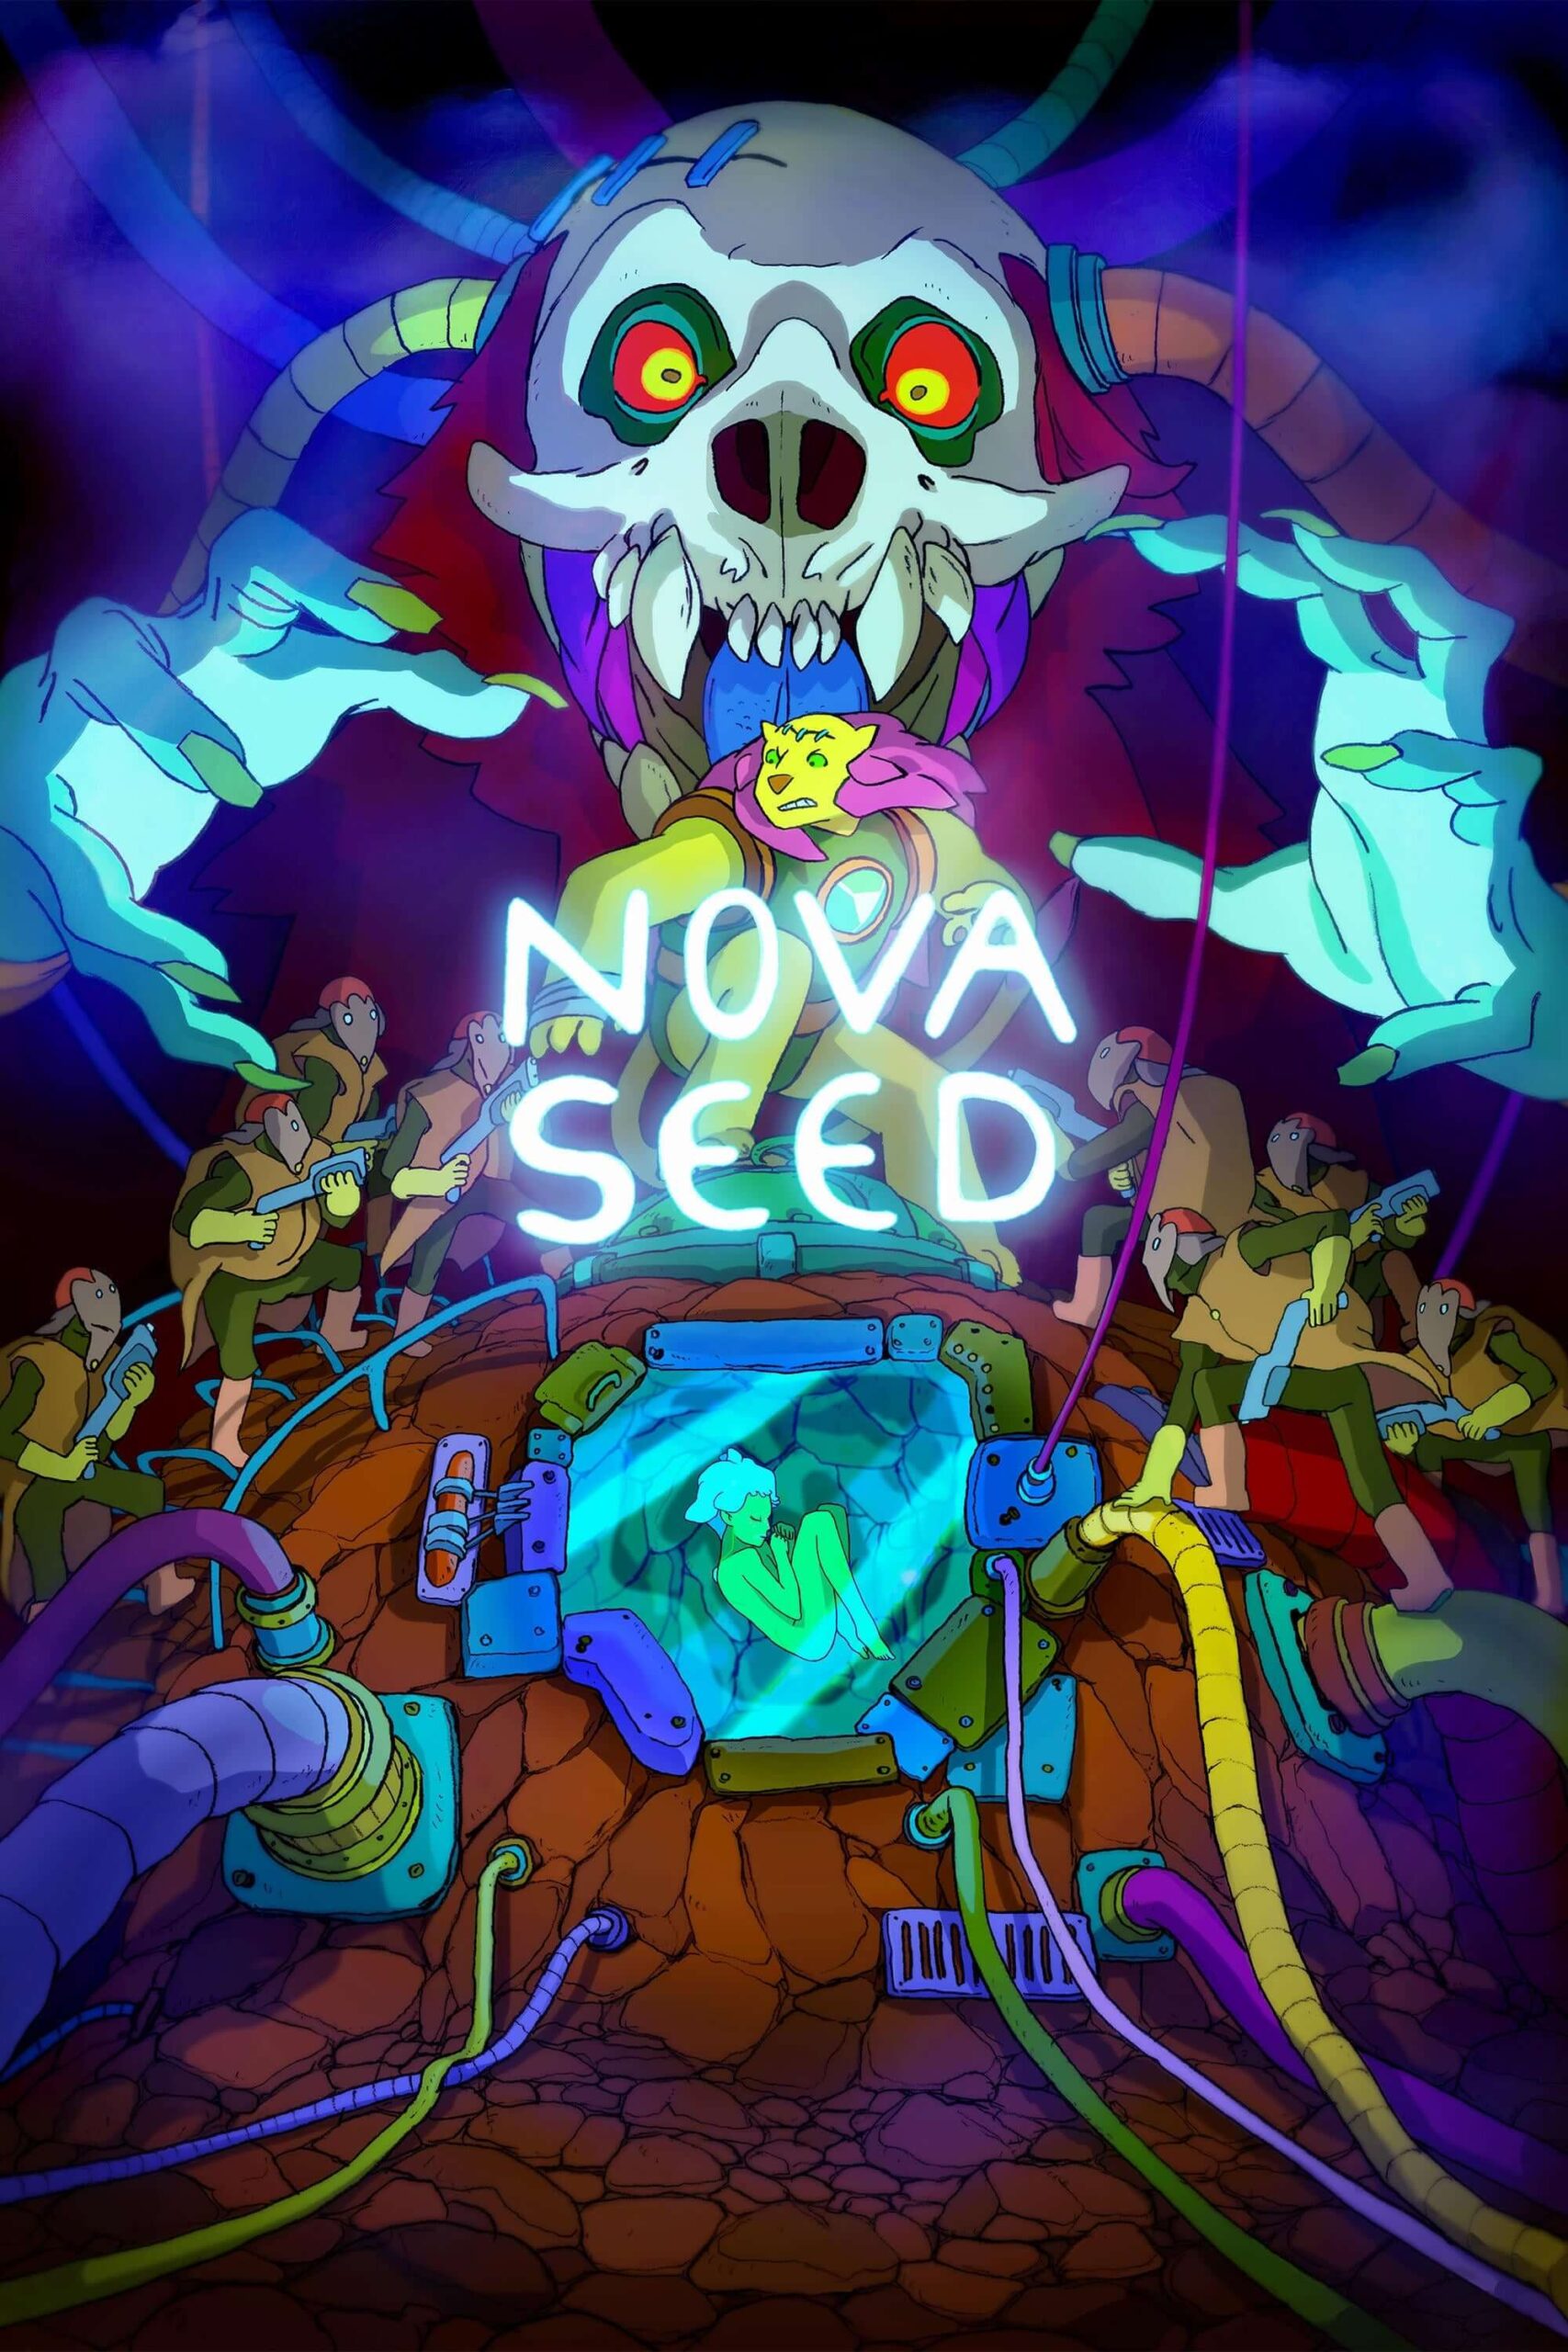 دانه نوا (Nova Seed)